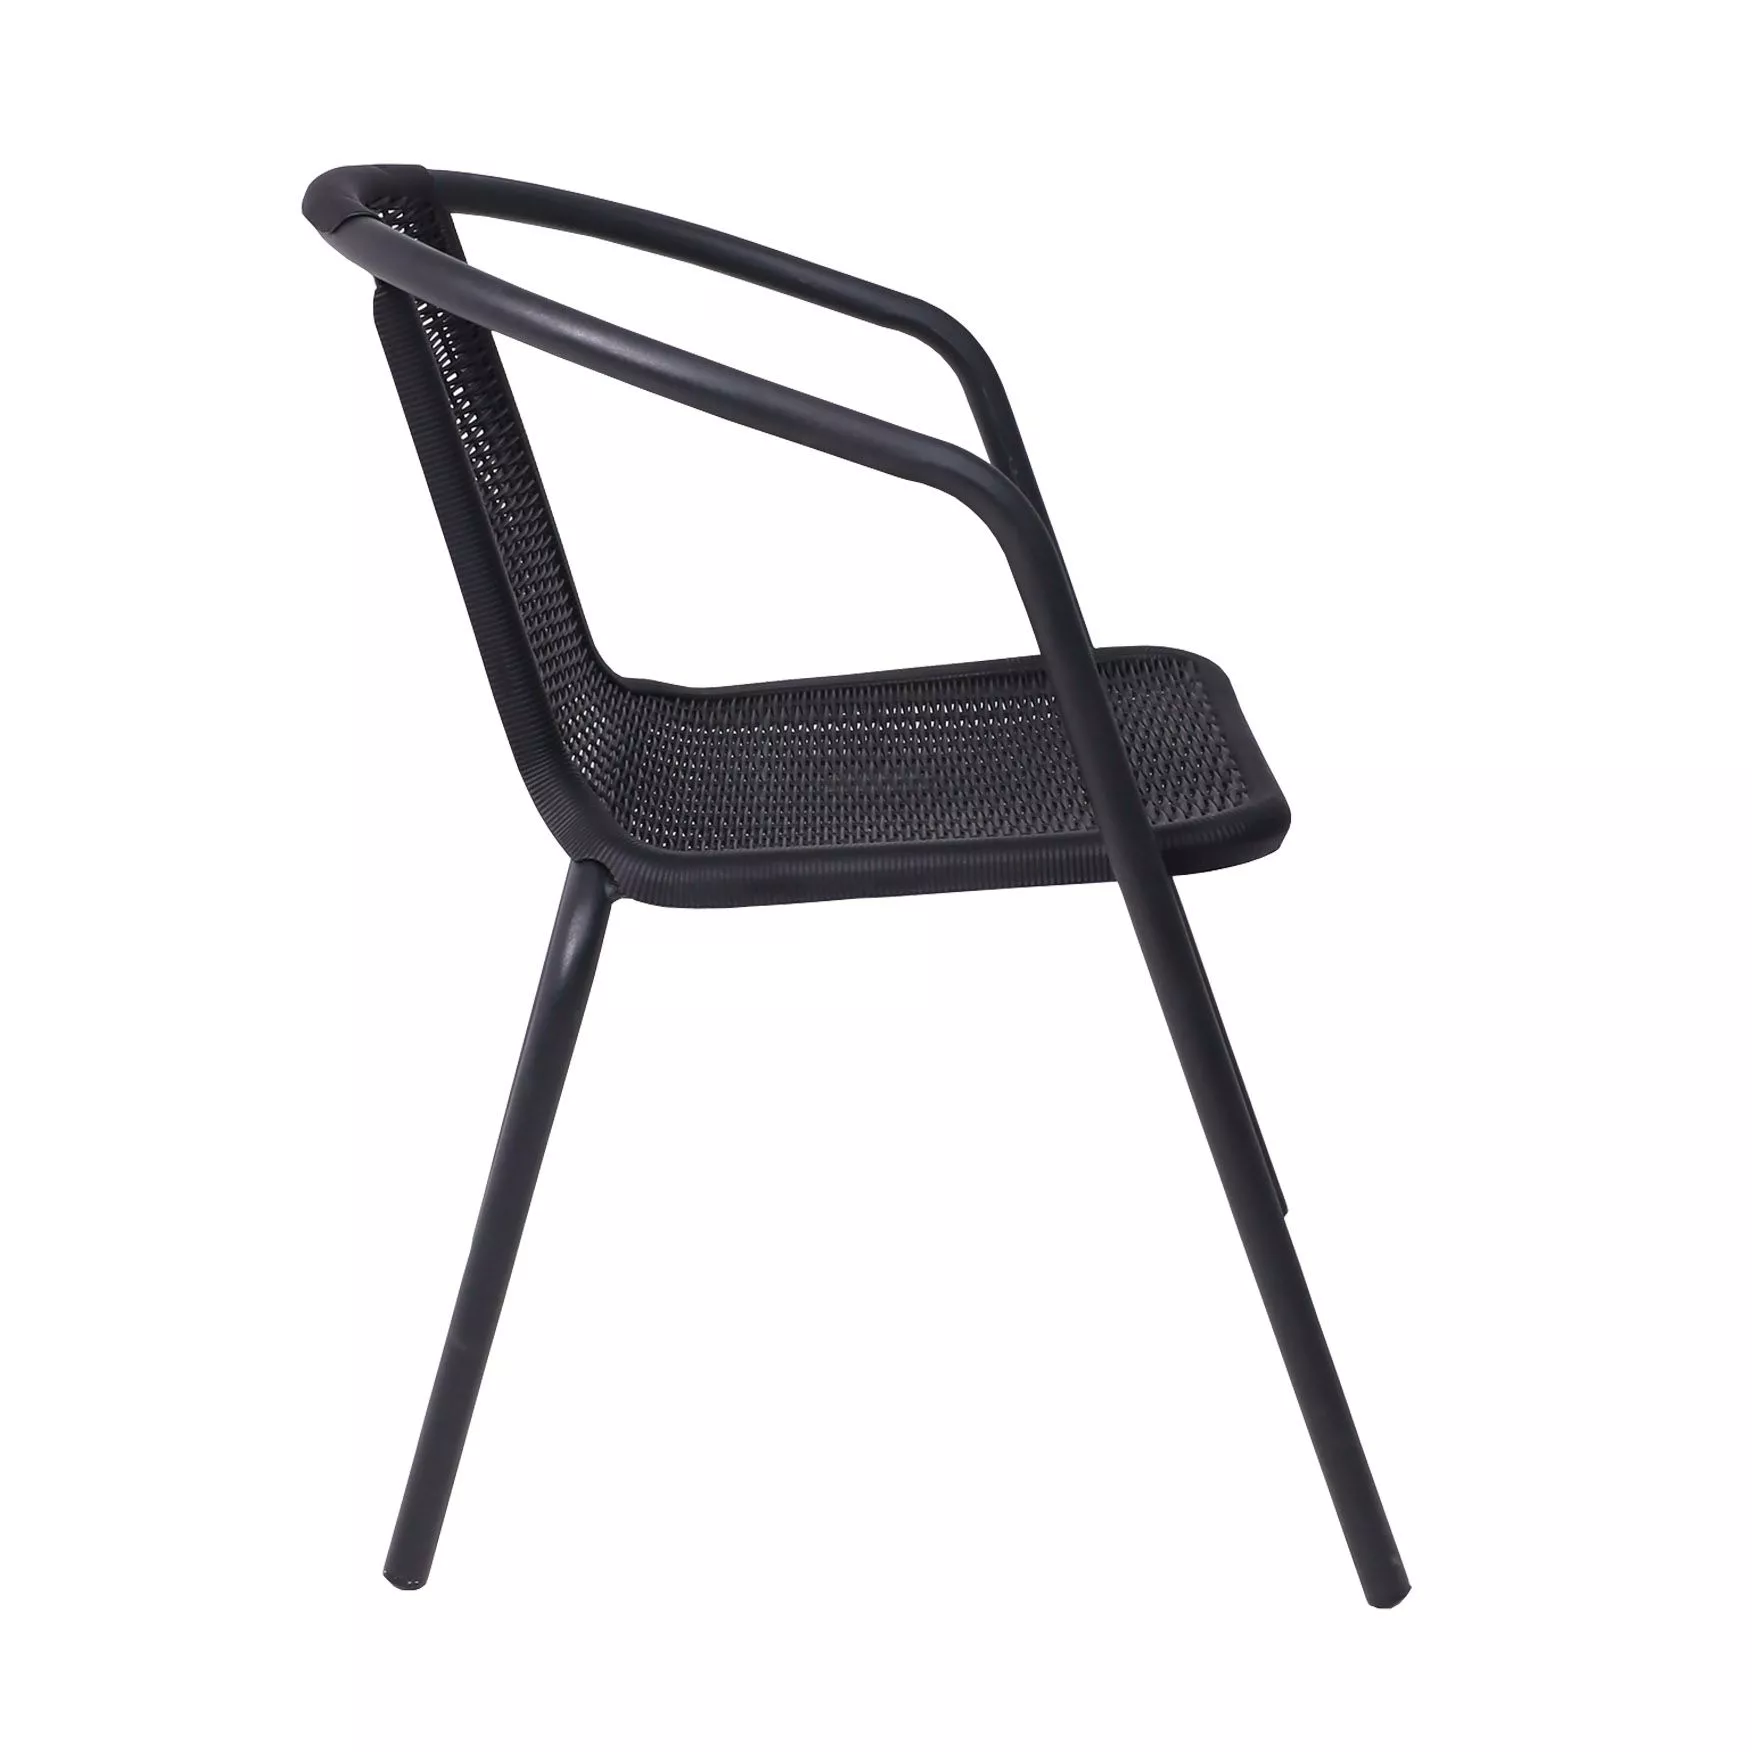 Кресло садовое VERONA PP пластик черный 94003